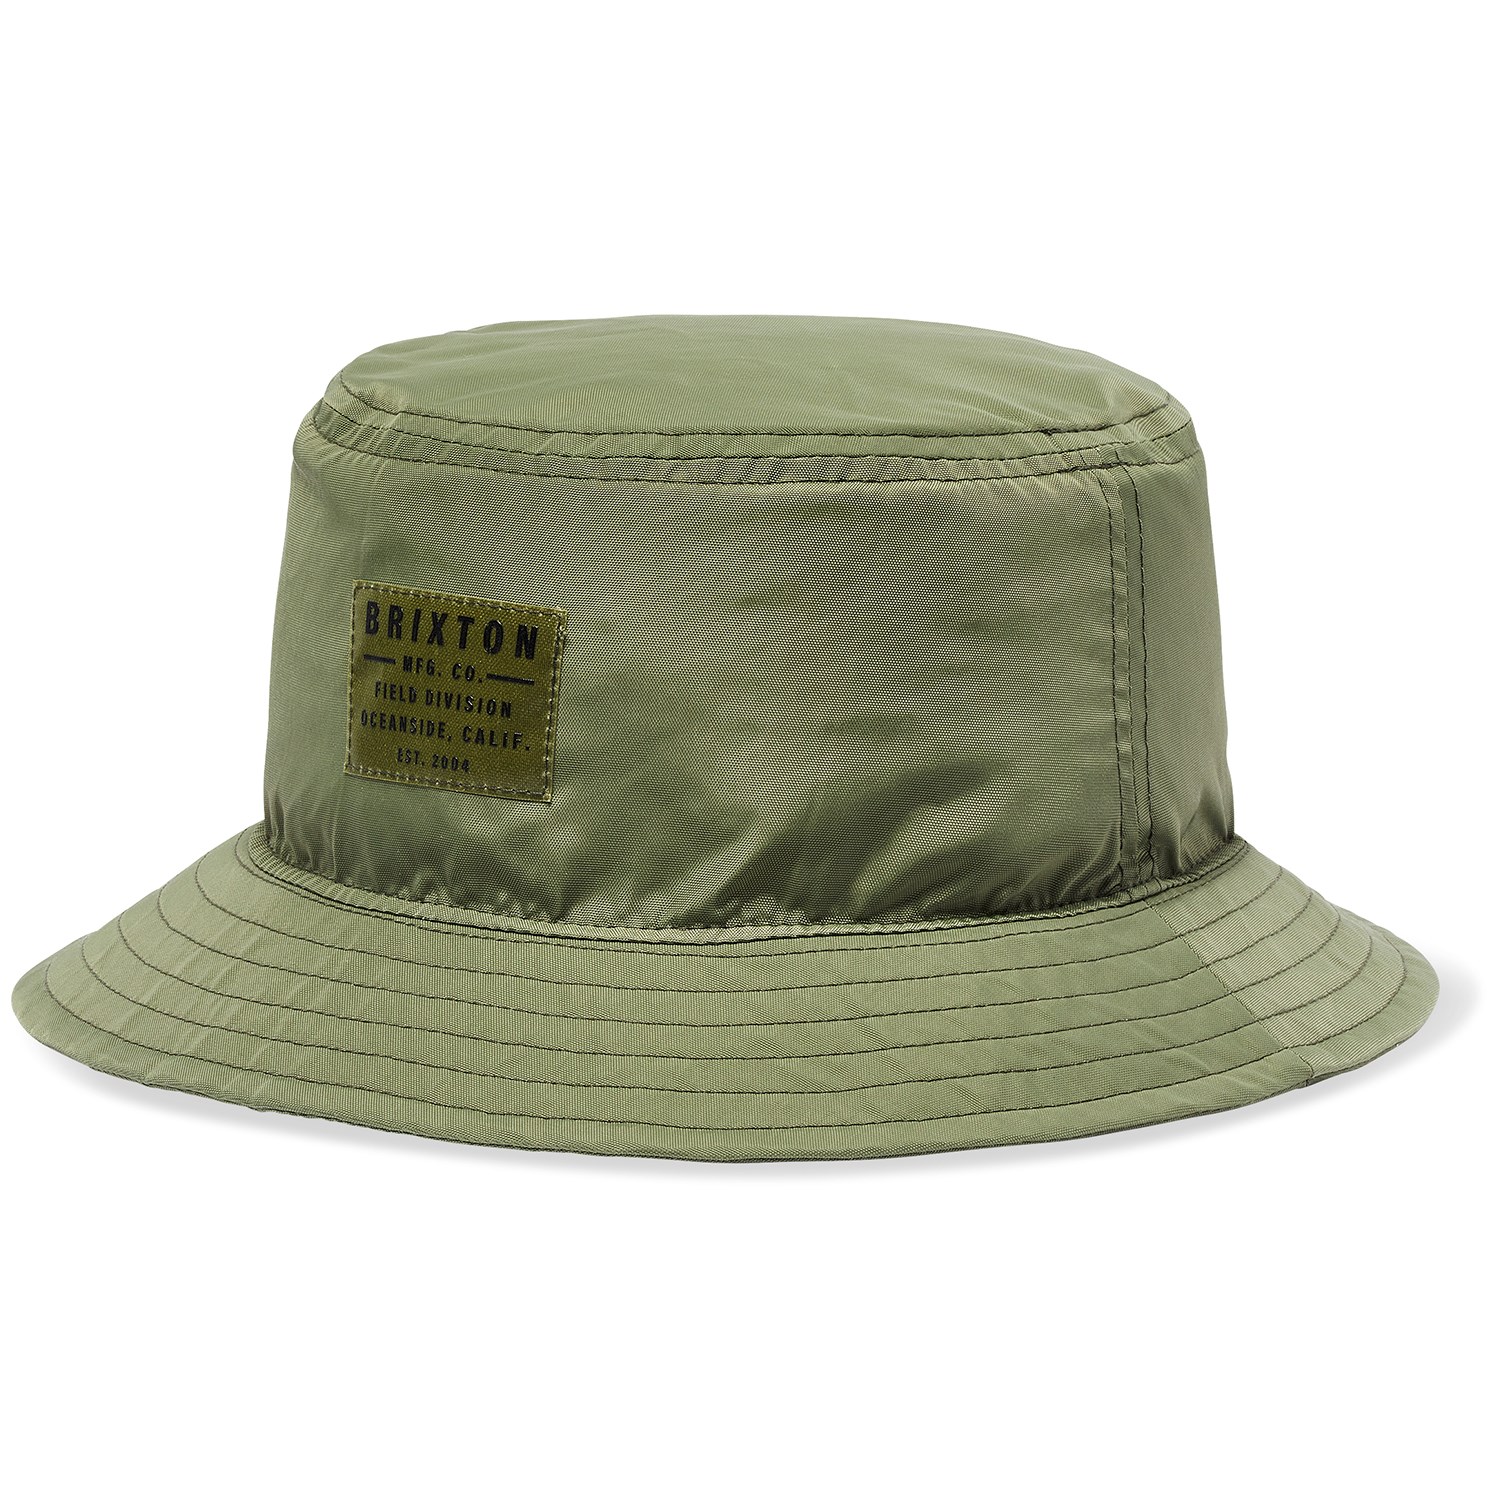 Панама Brixton Vintage Nylon Packable, цвет Olive Surplus шапка бини snap unisex brixton цвет olive surplus tan